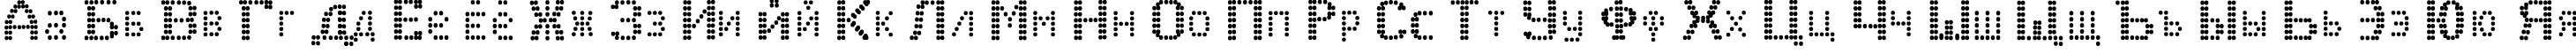 Пример написания русского алфавита шрифтом J_EKR_B_N